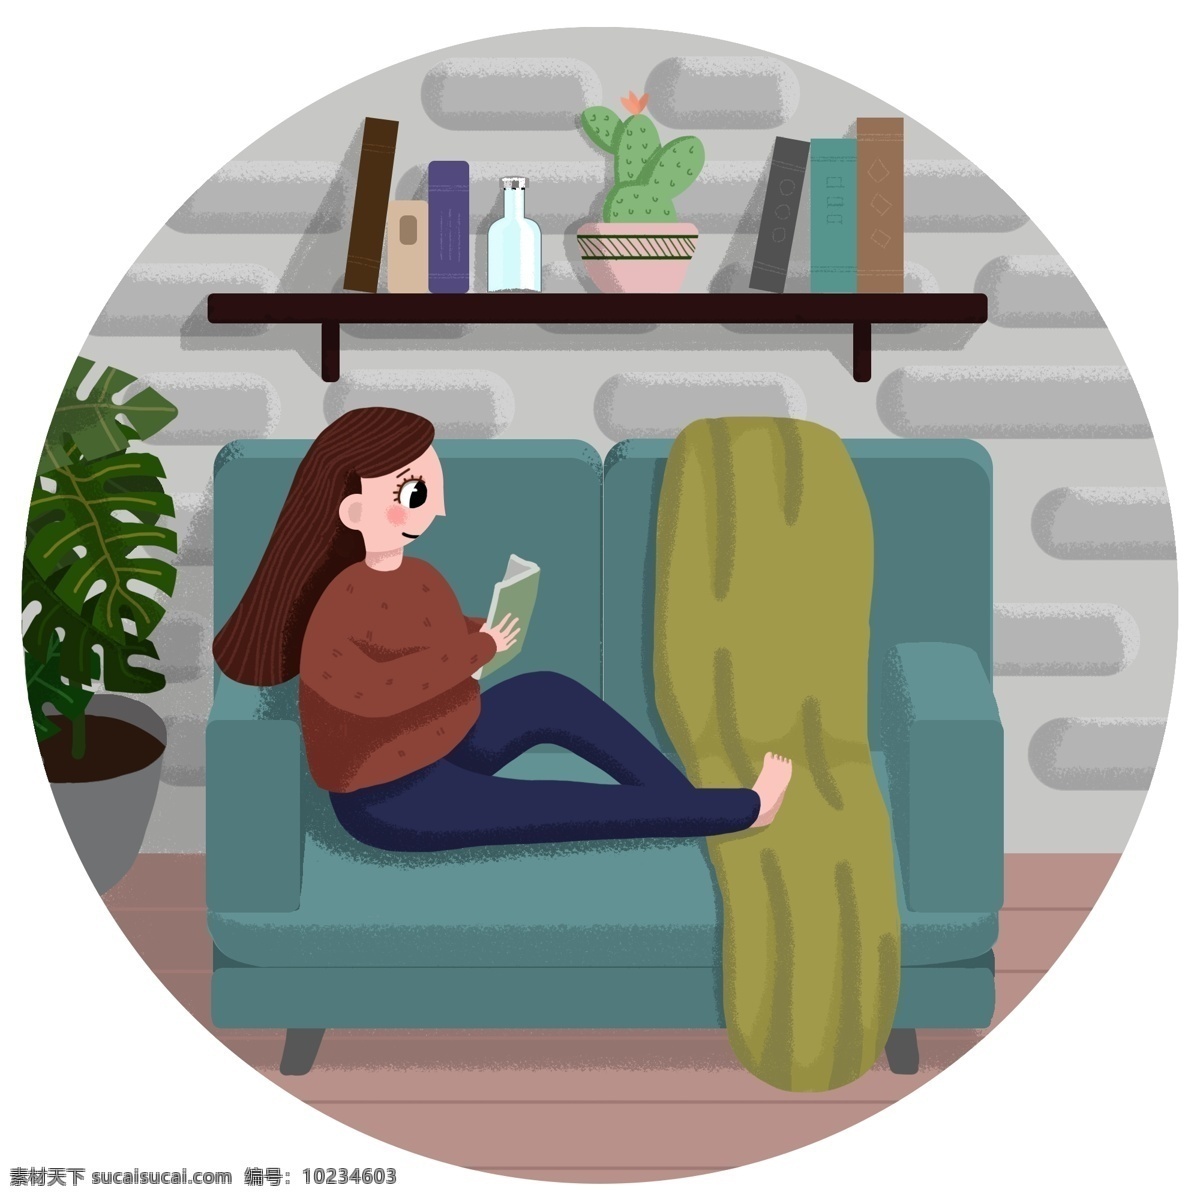 冬季 宅 在家 中 看书 女孩 沙发 书籍 地板 家里 毯子 绿色植物 仙人掌 书架 玻璃瓶 装饰墙